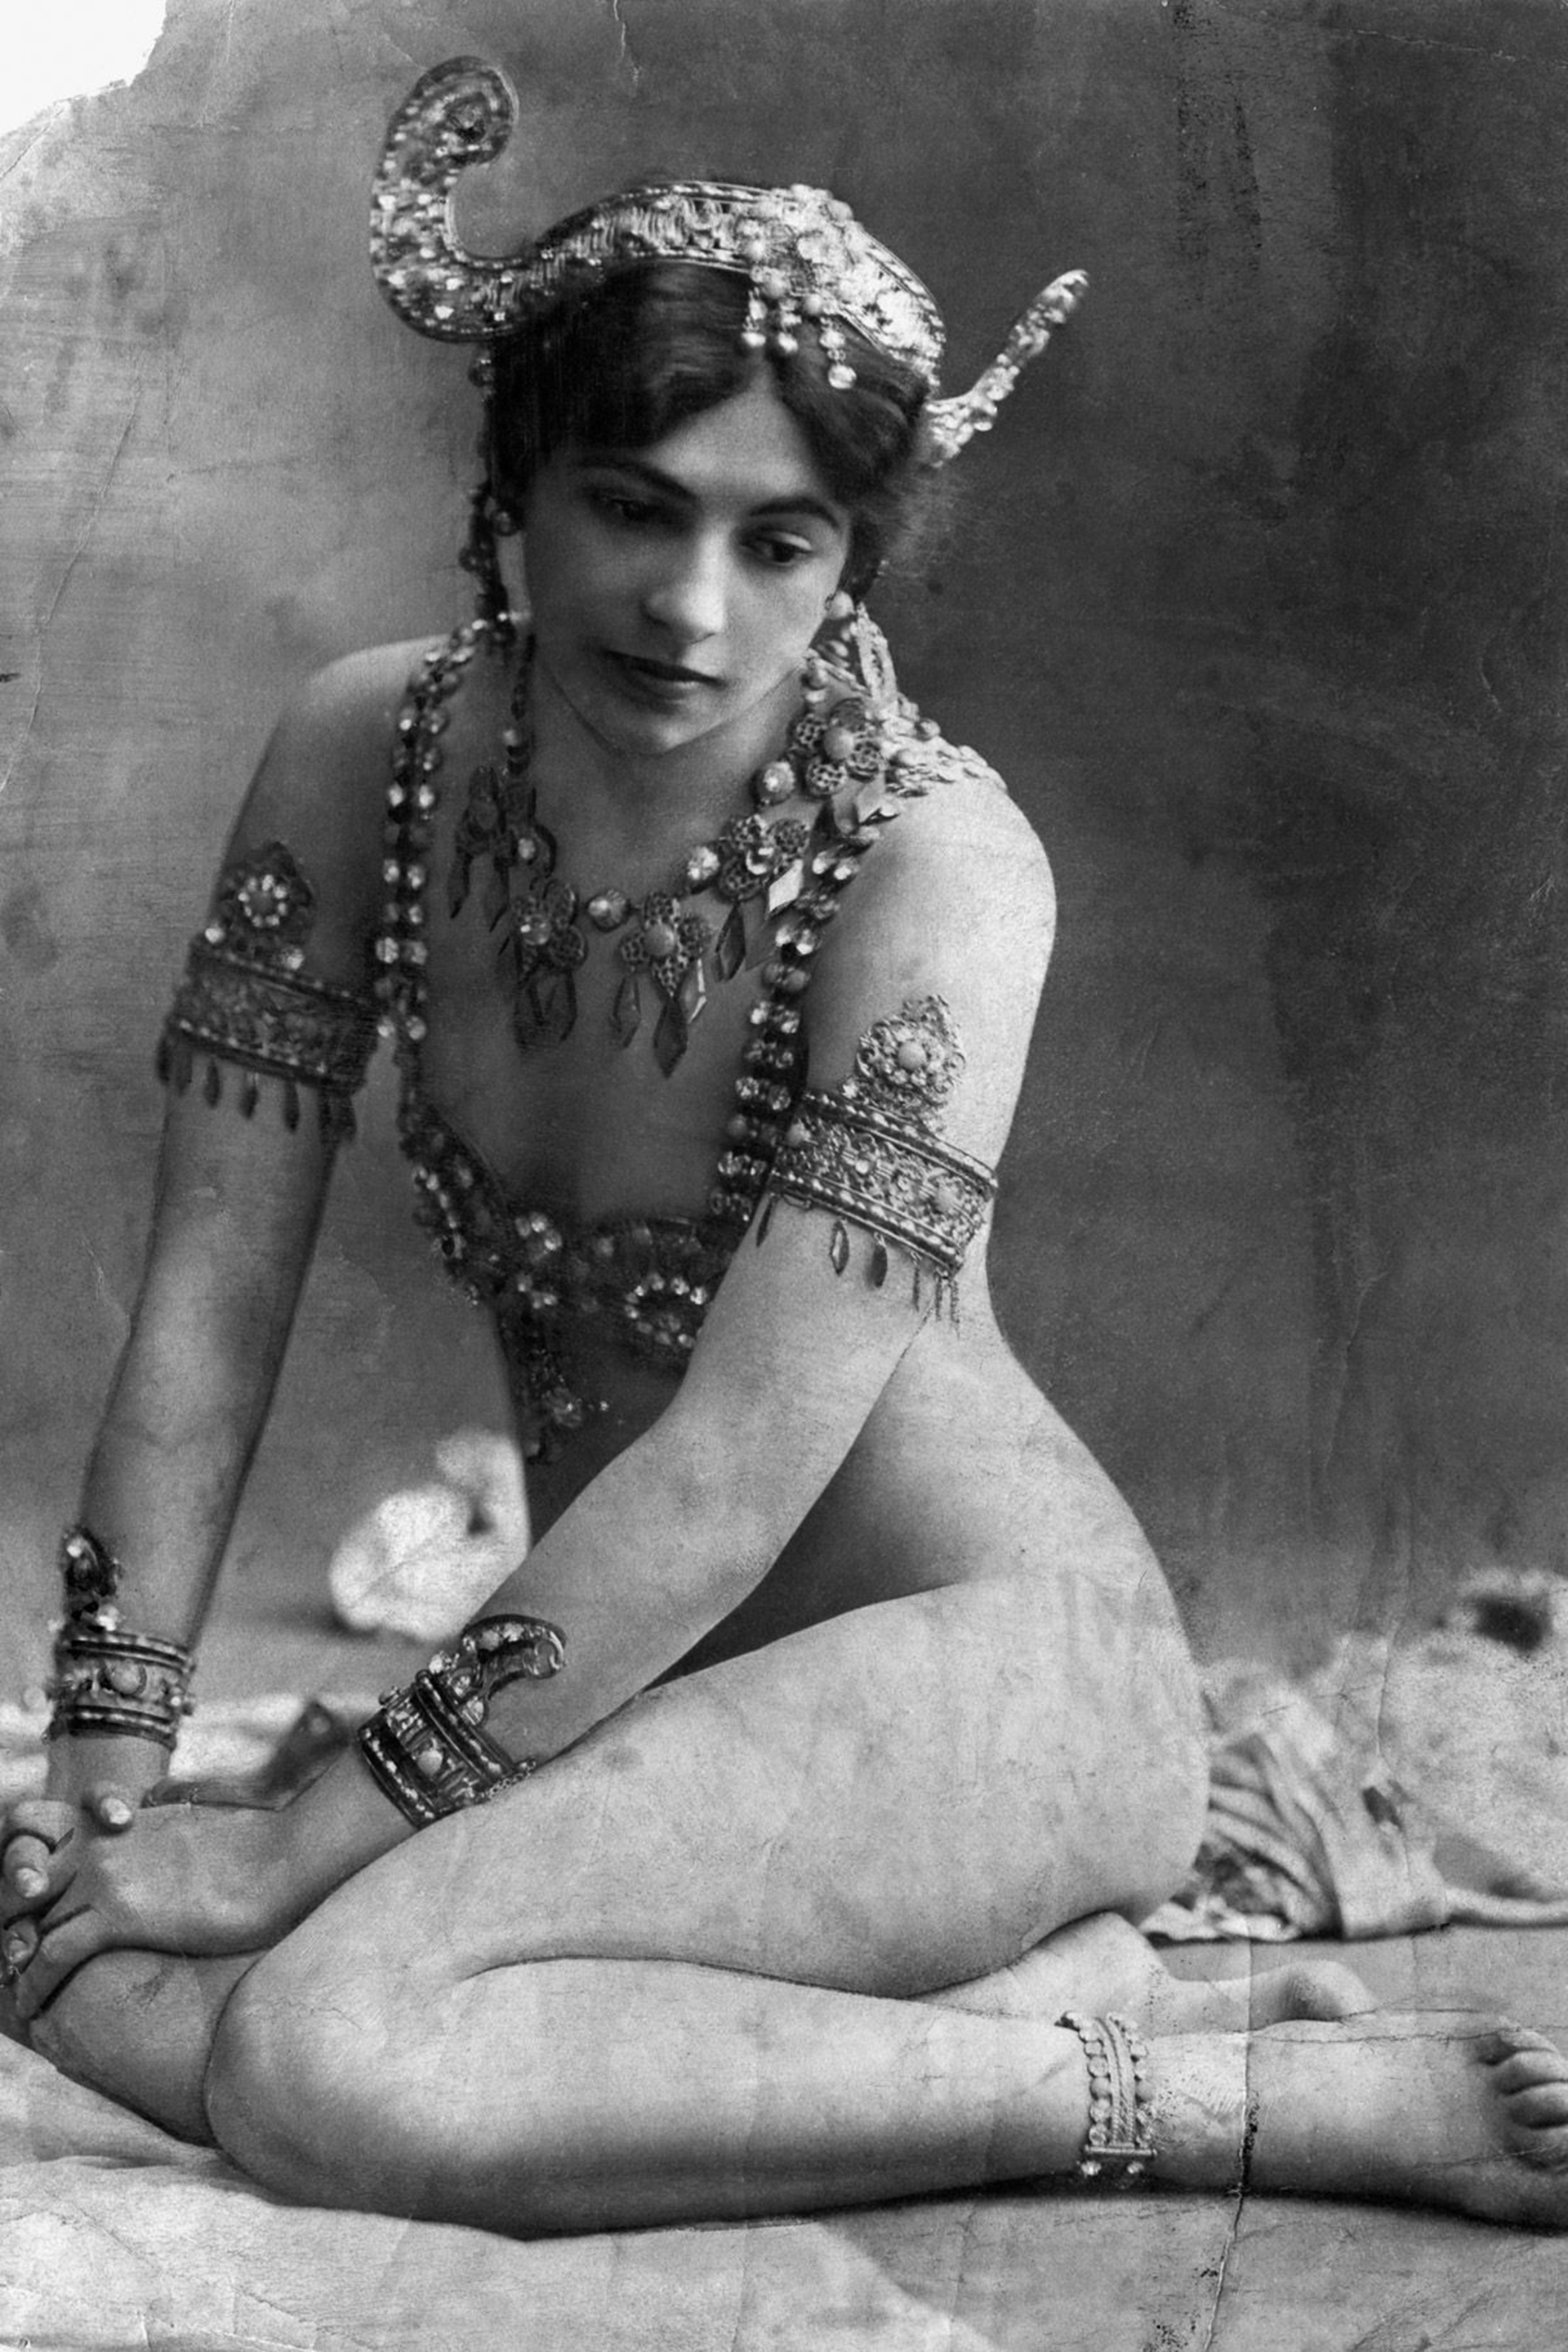 De joven, Mata Hari fue expulsada de la escuela normal de Lieden al ser descubierto su affaire con el director del establecimiento.